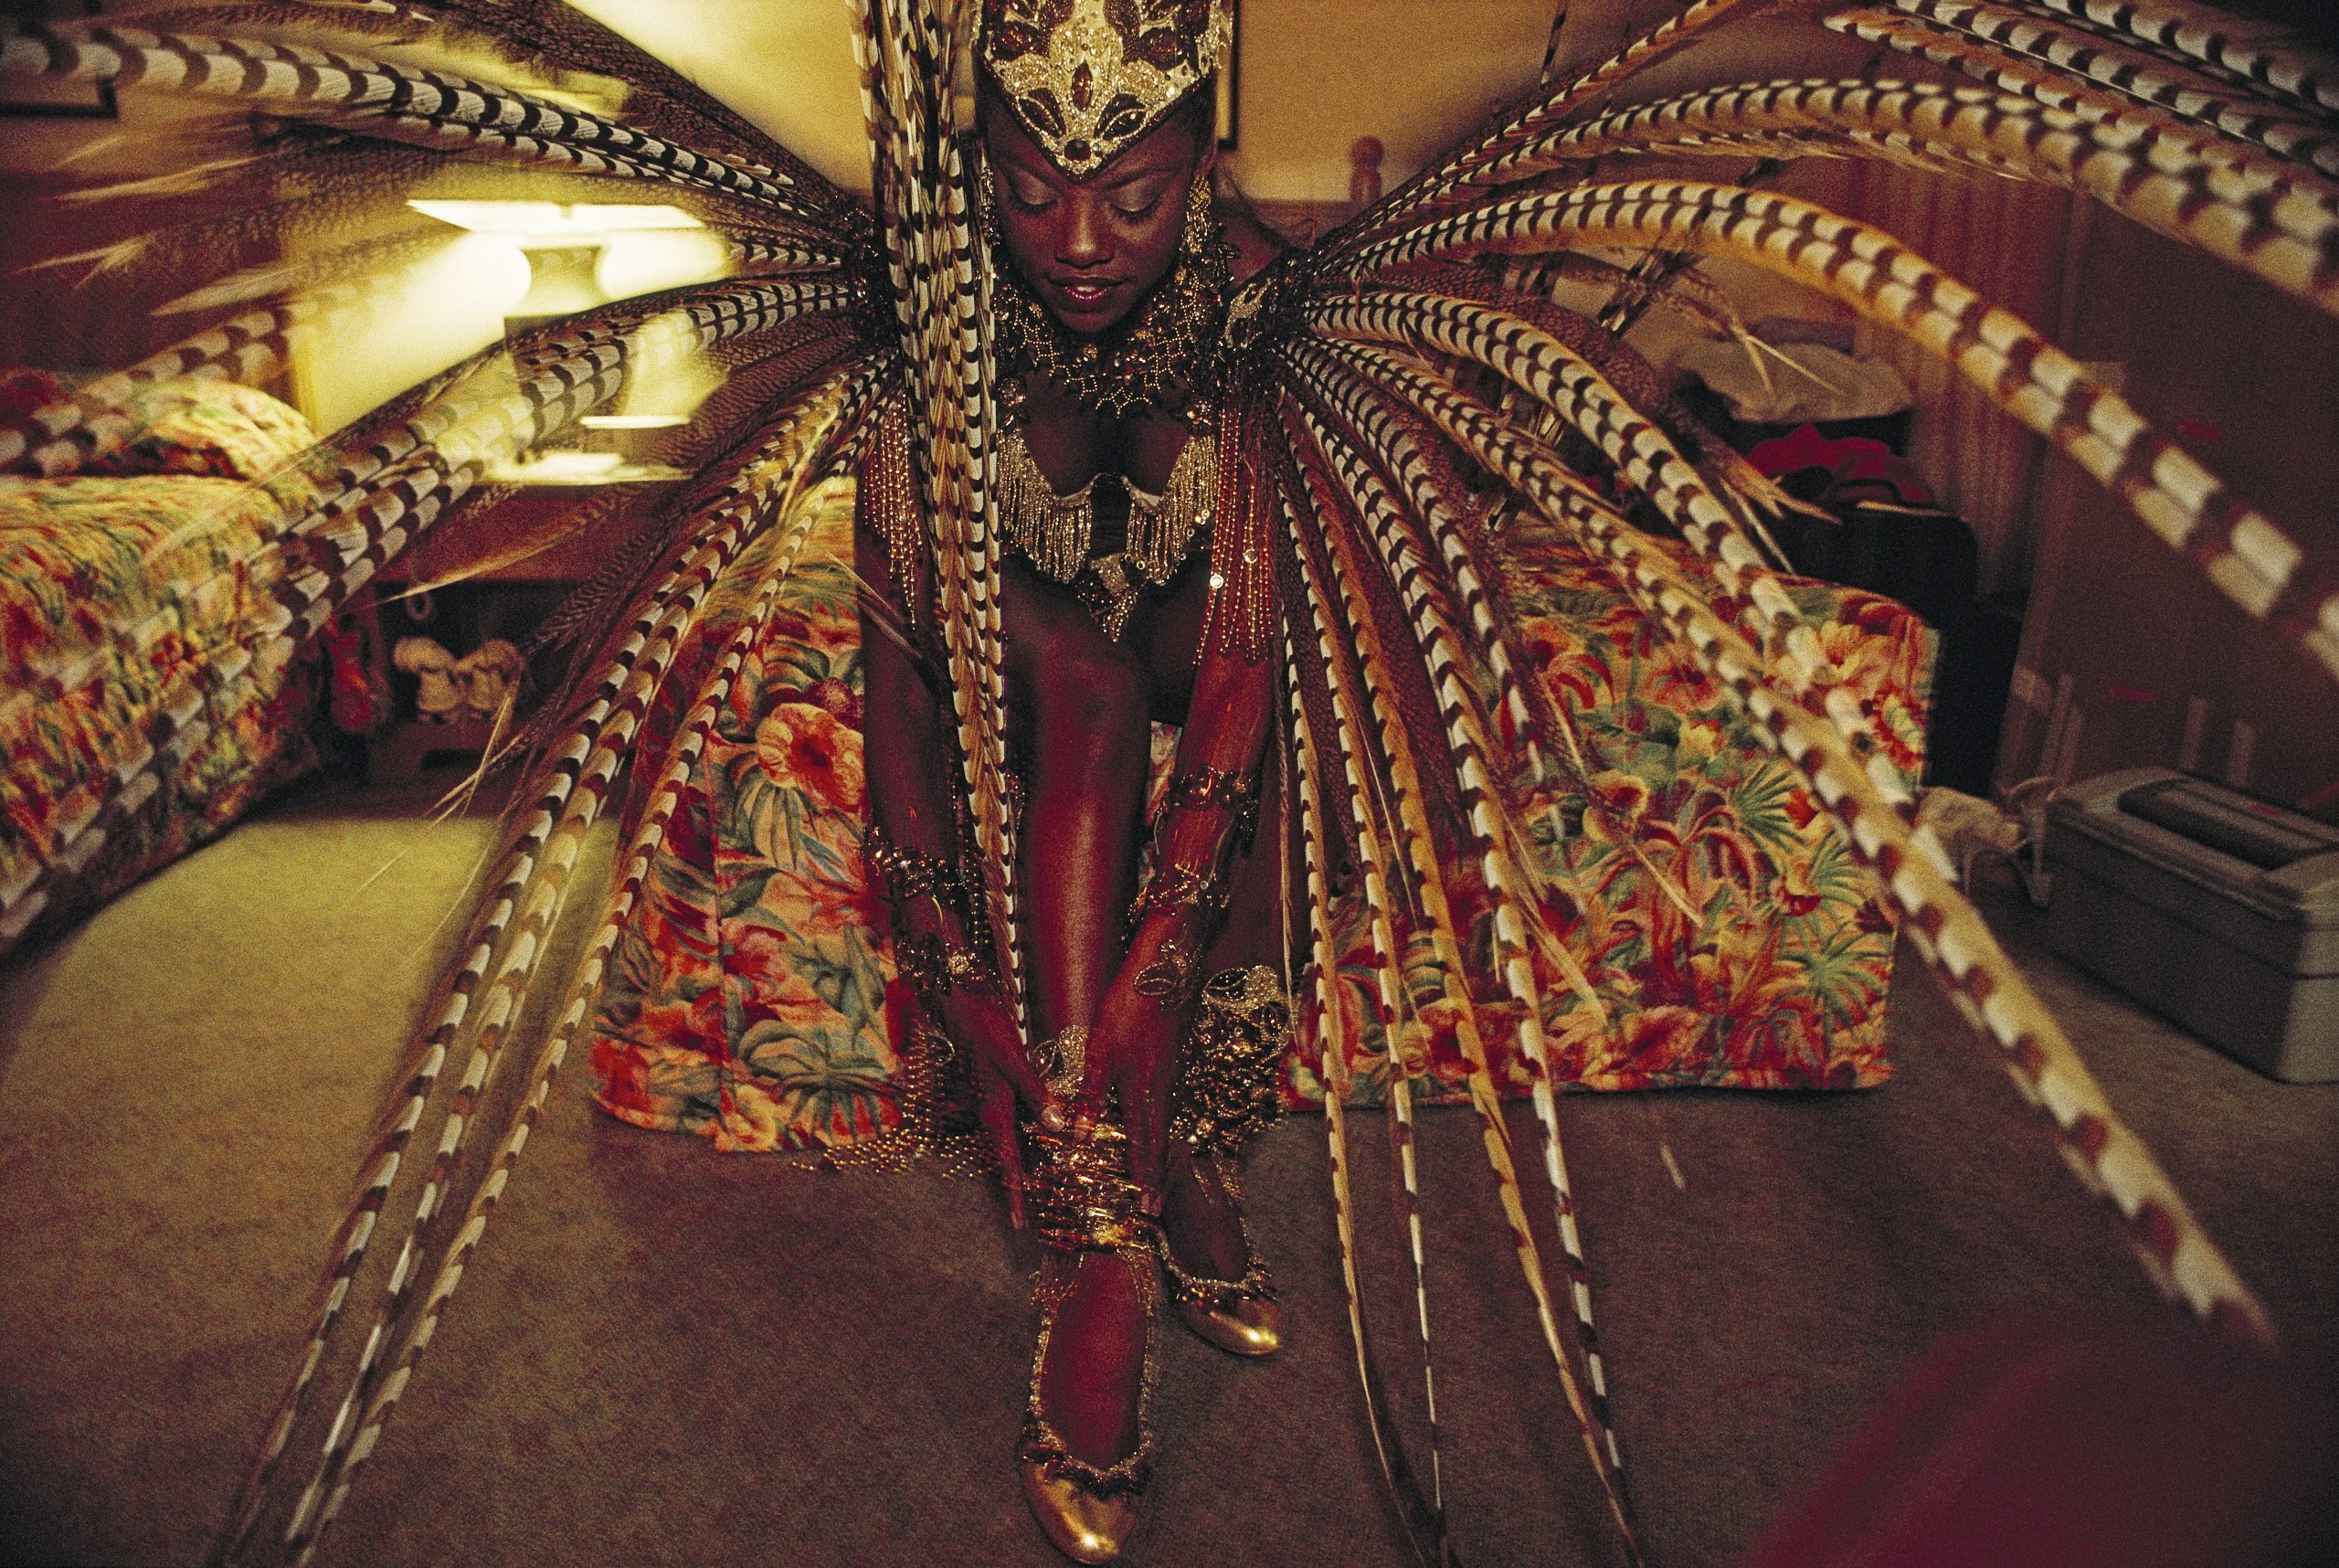 BELLEZZA Qualche ora prima di essere incoronata Miss Universo 1998, la studentessa Wendy Fitzwilliam di Trinidad dà un ultimo tocco al suo costume tradizionale. JODI COBB, 1998